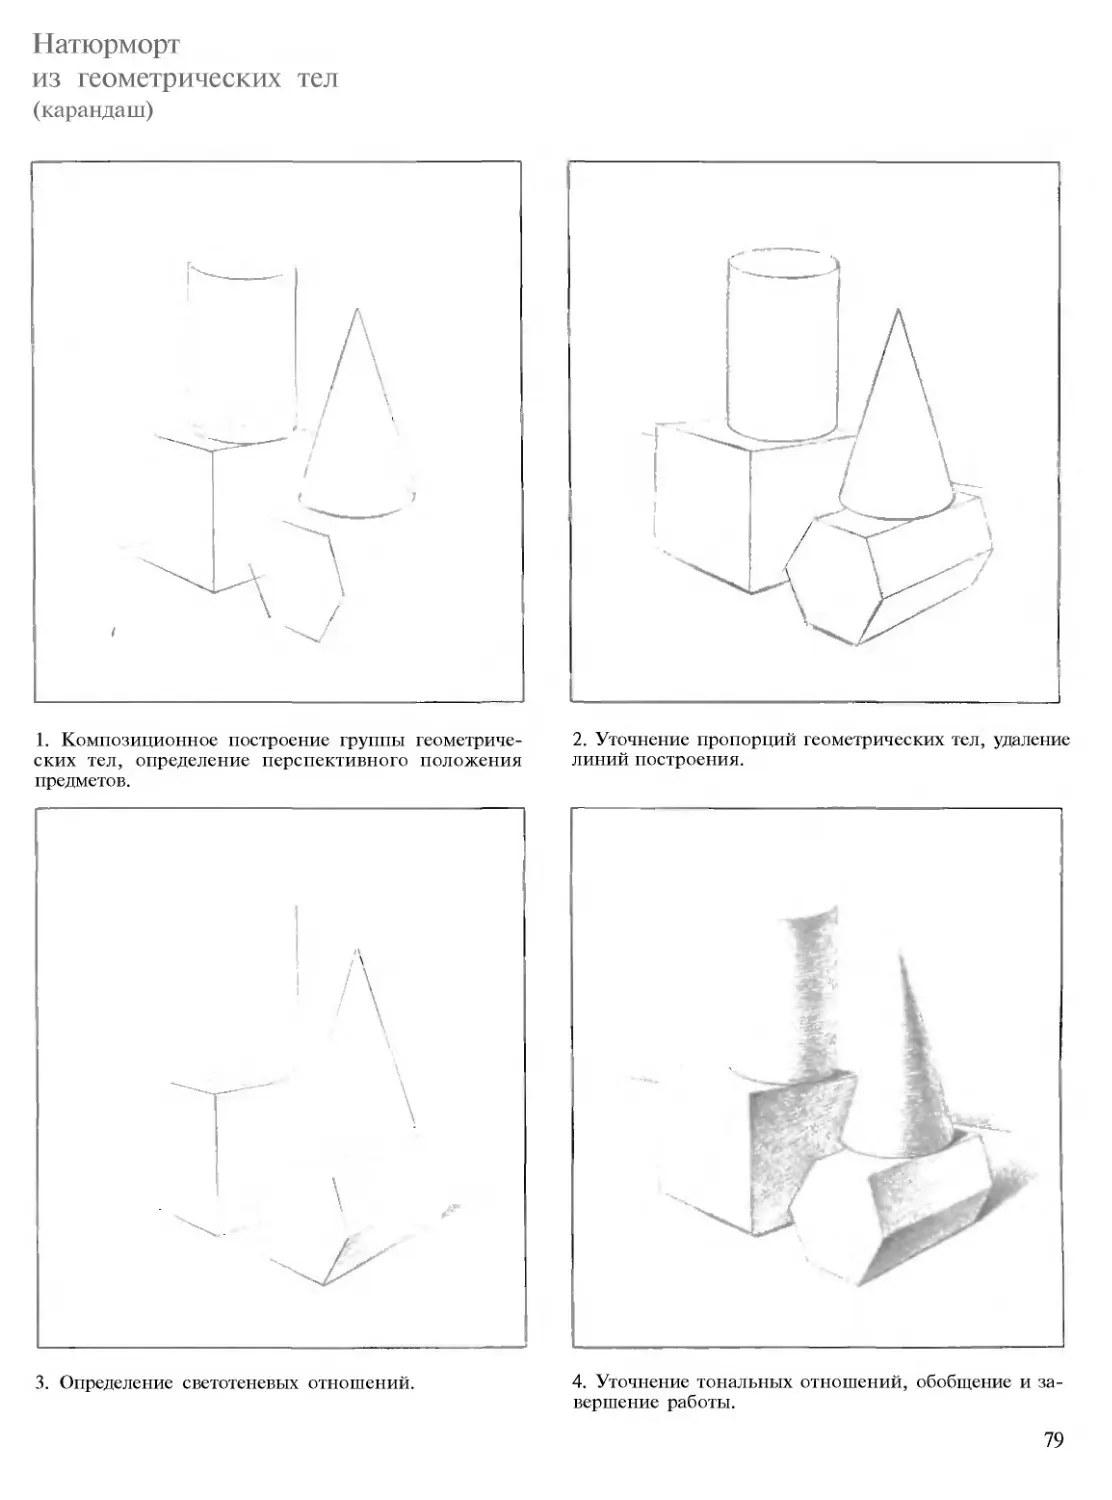 Этапы натюрморта из геометрических фигур